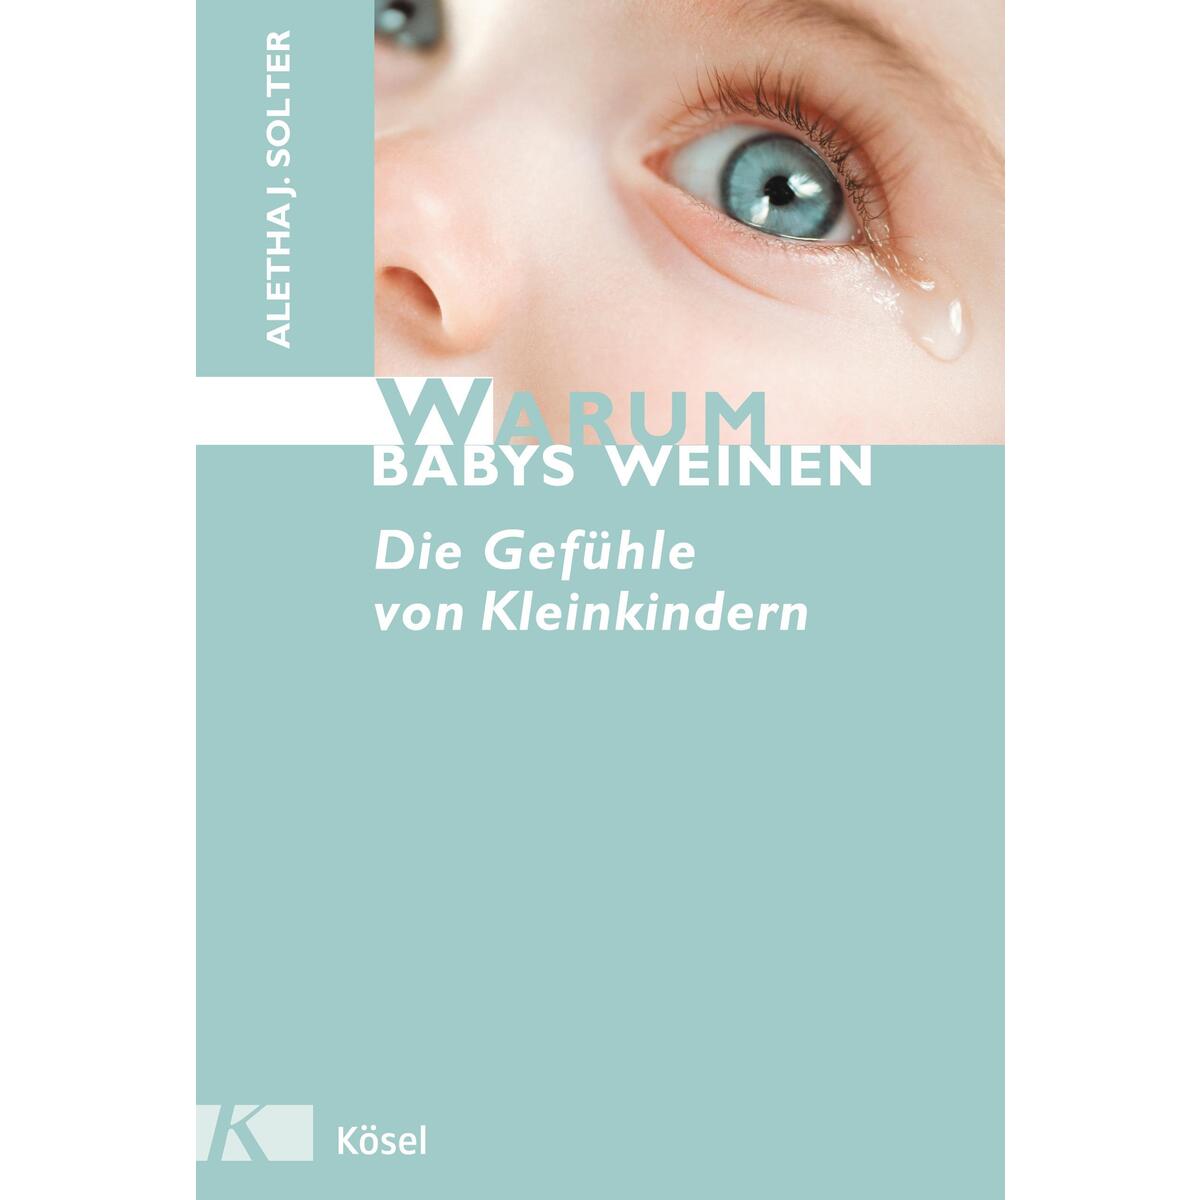 Warum Babys weinen von Kösel-Verlag